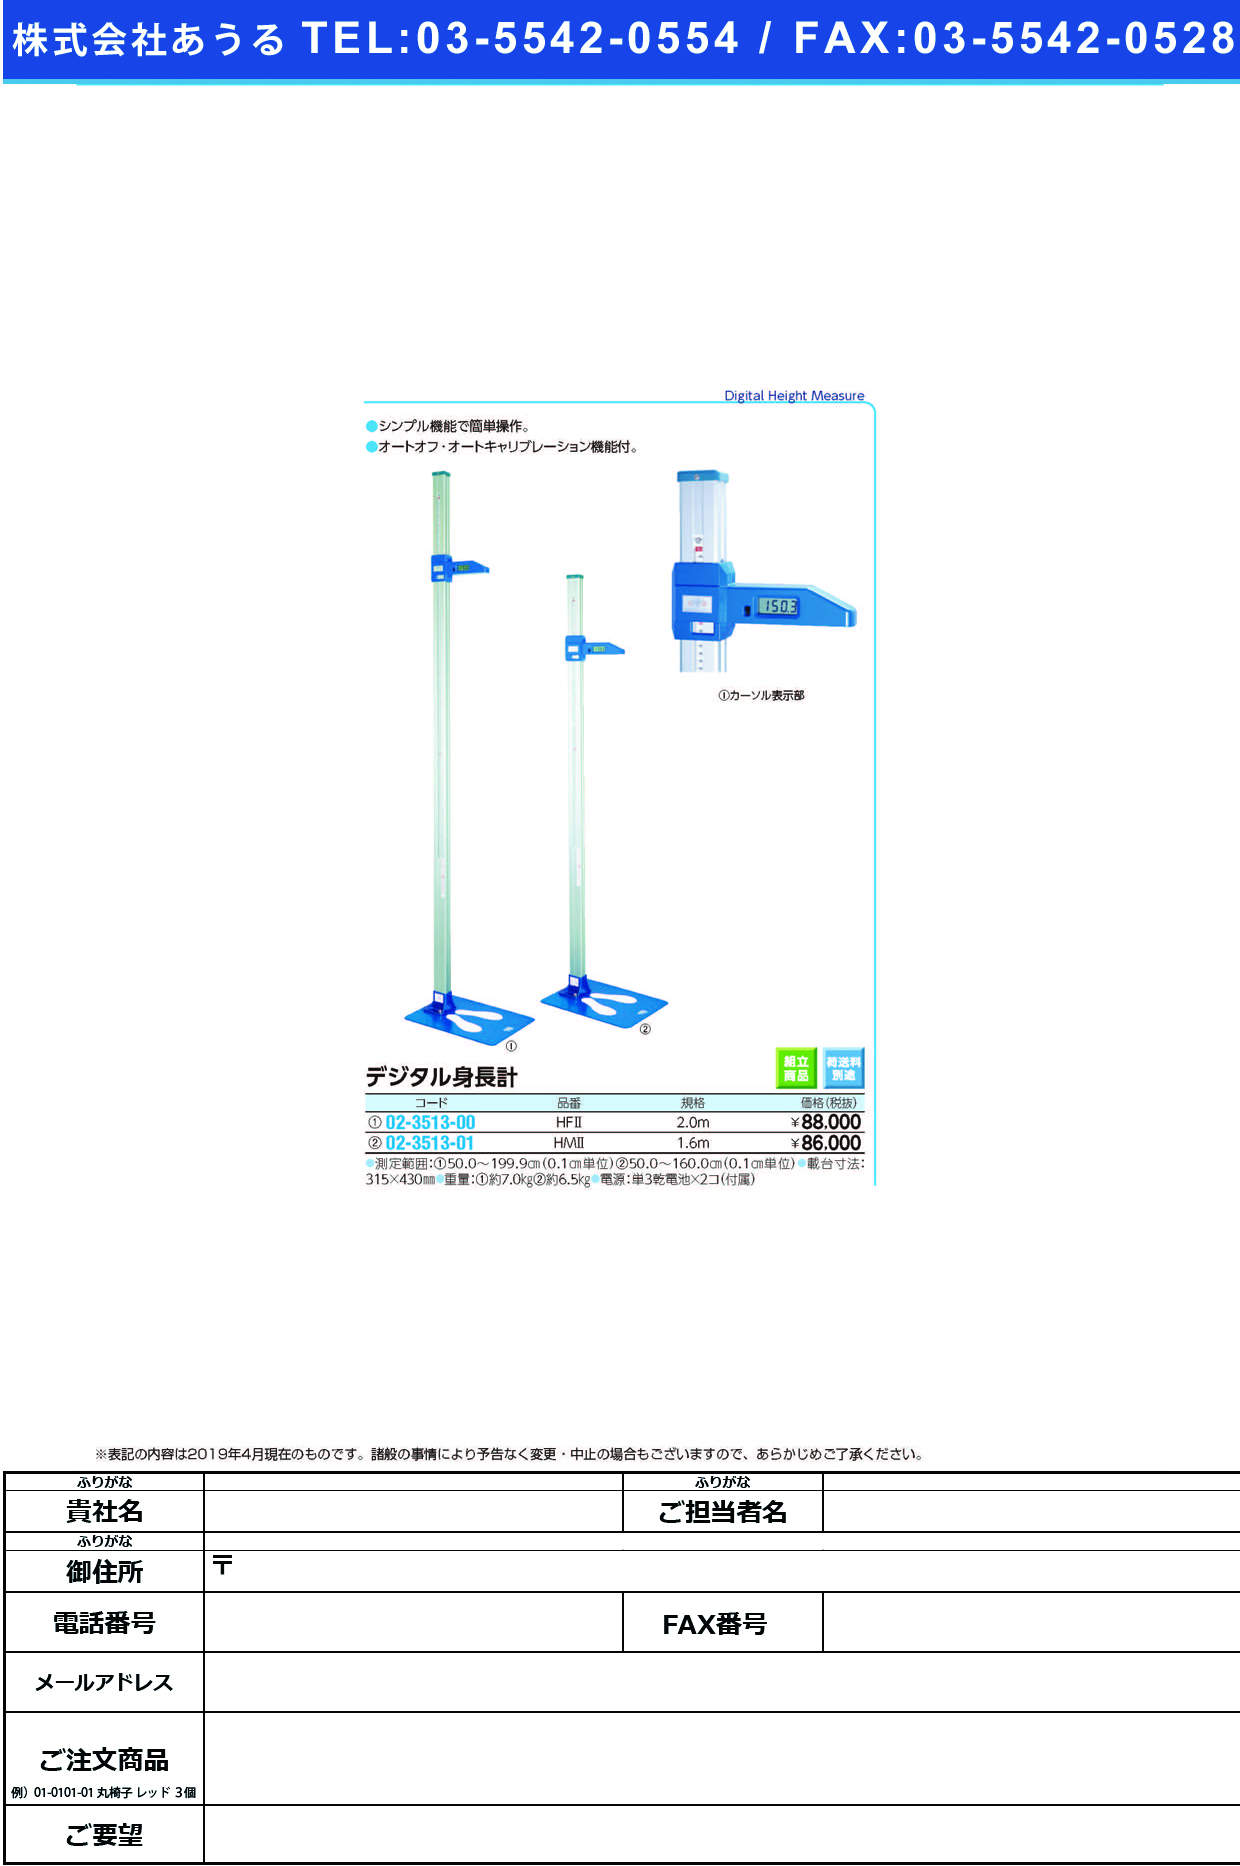 (02-3513-00)デジタル身長計 HF2(2M) ﾃｼﾞﾀﾙｼﾝﾁｮｳｹｲ【1台単位】【2019年カタログ商品】